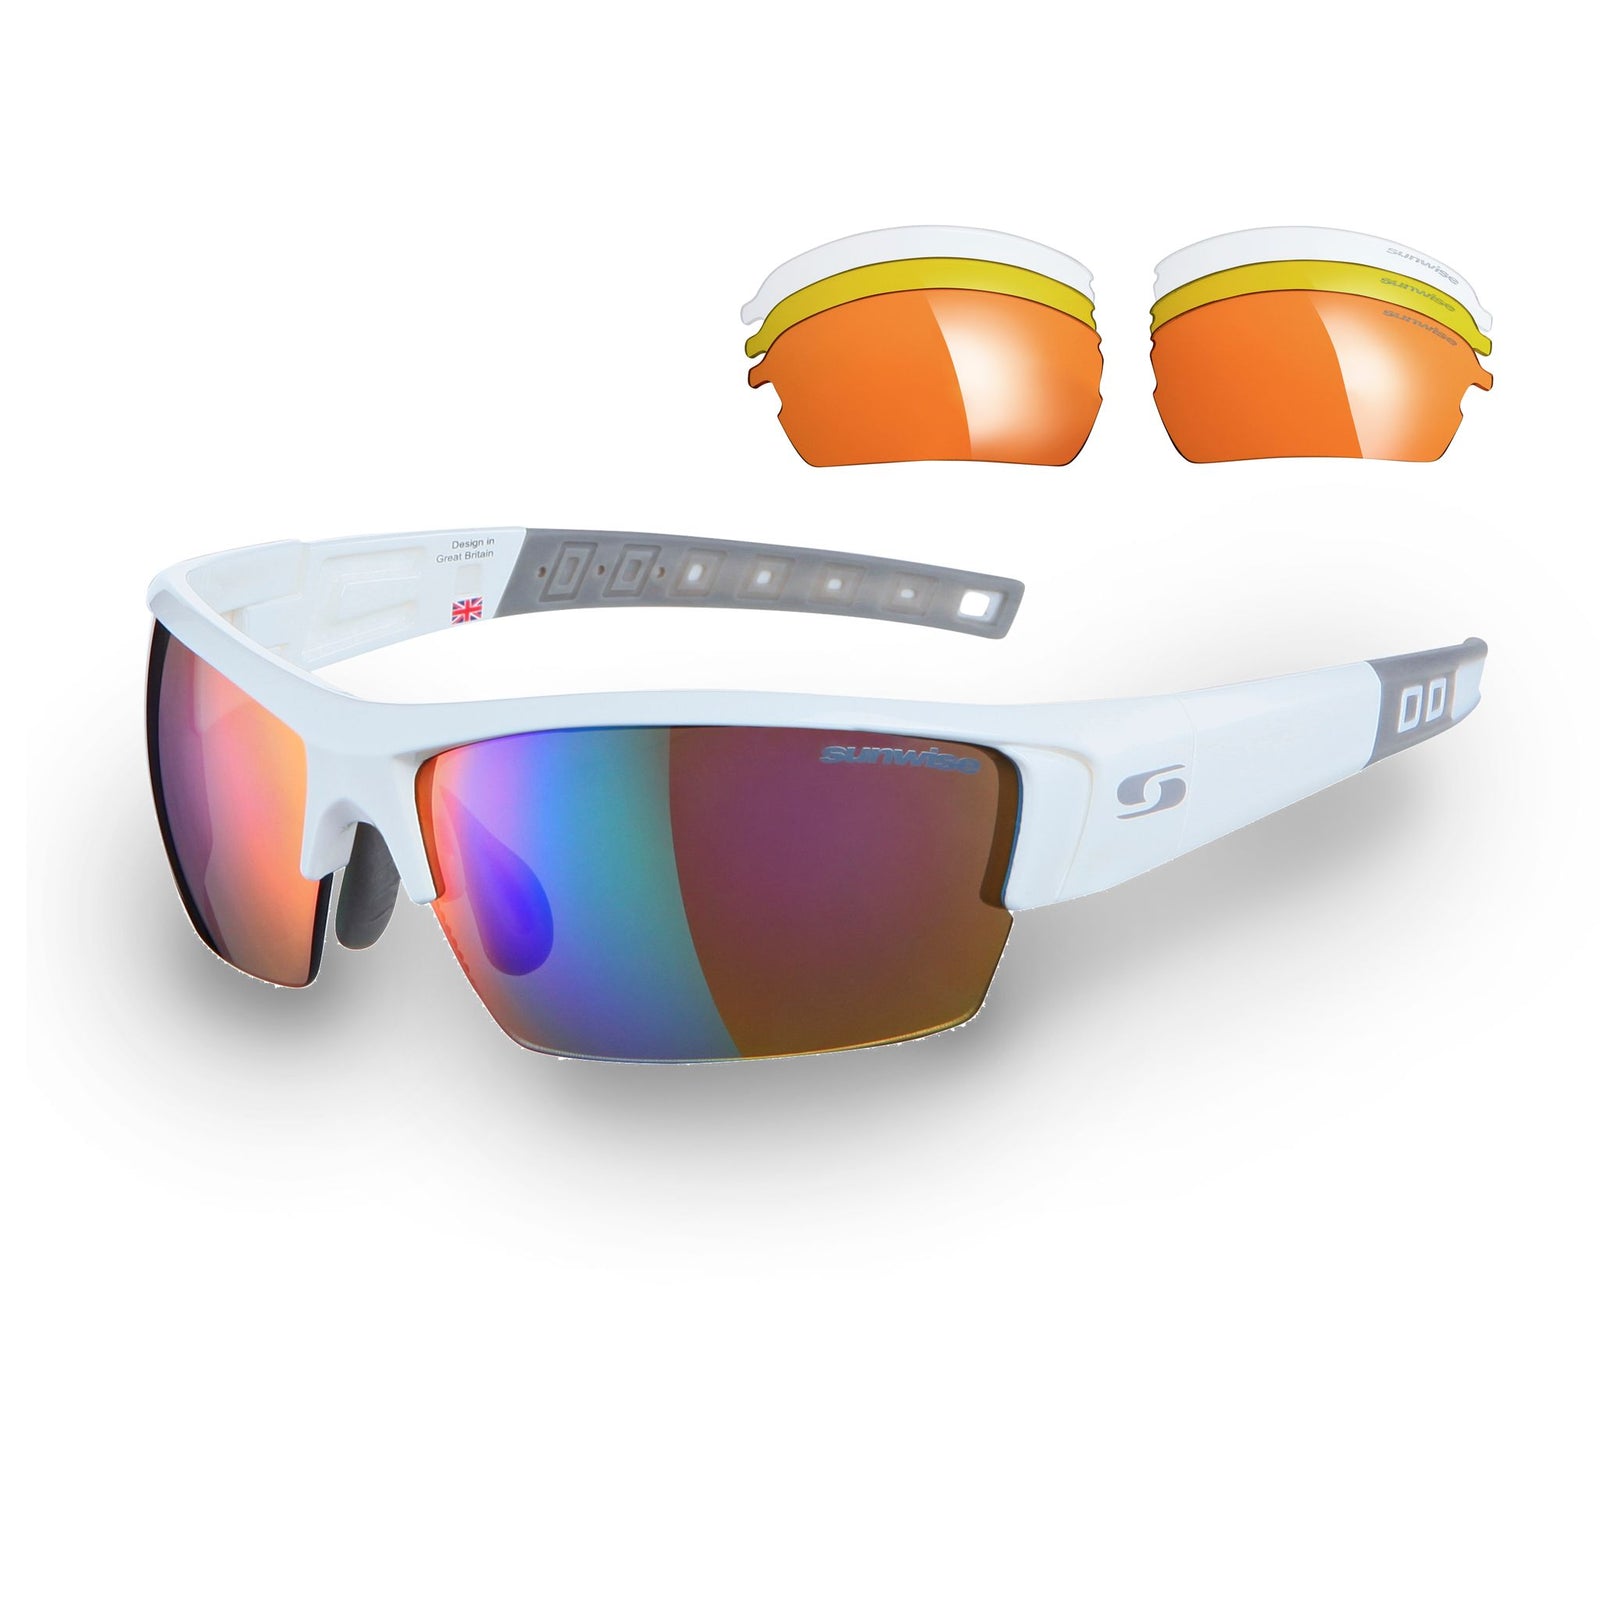 Gafas de sol deportivas Atlanta con lentes intercambiables